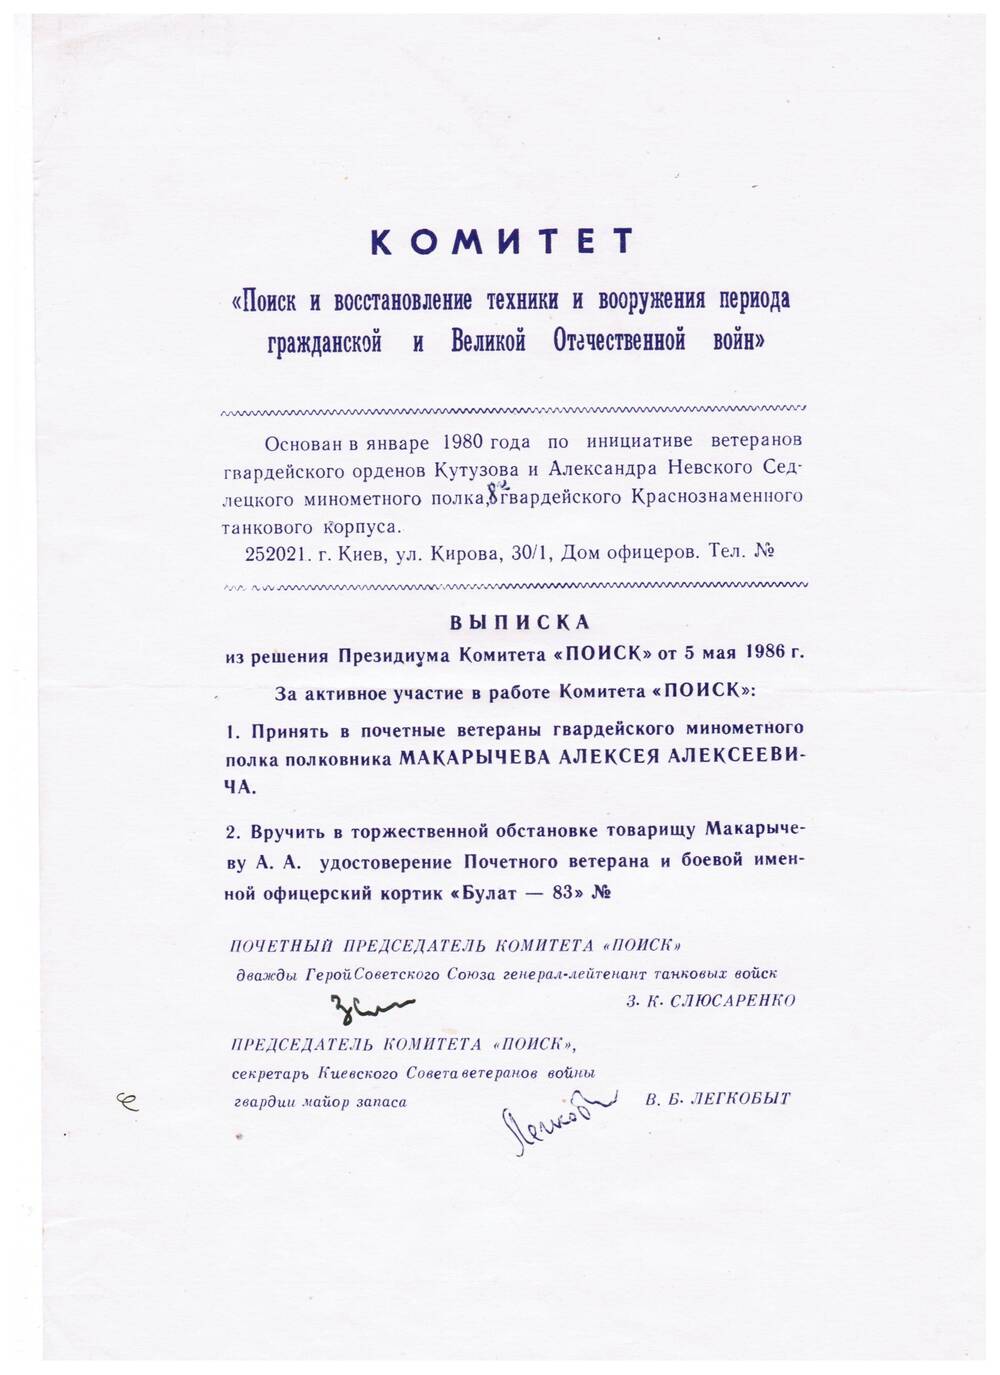 Выписка из решения президиума комитета Поиск от 5 мая 1986 года о принятии А.А.Макарычева в Почетные ветераны гвардейского минометного полка